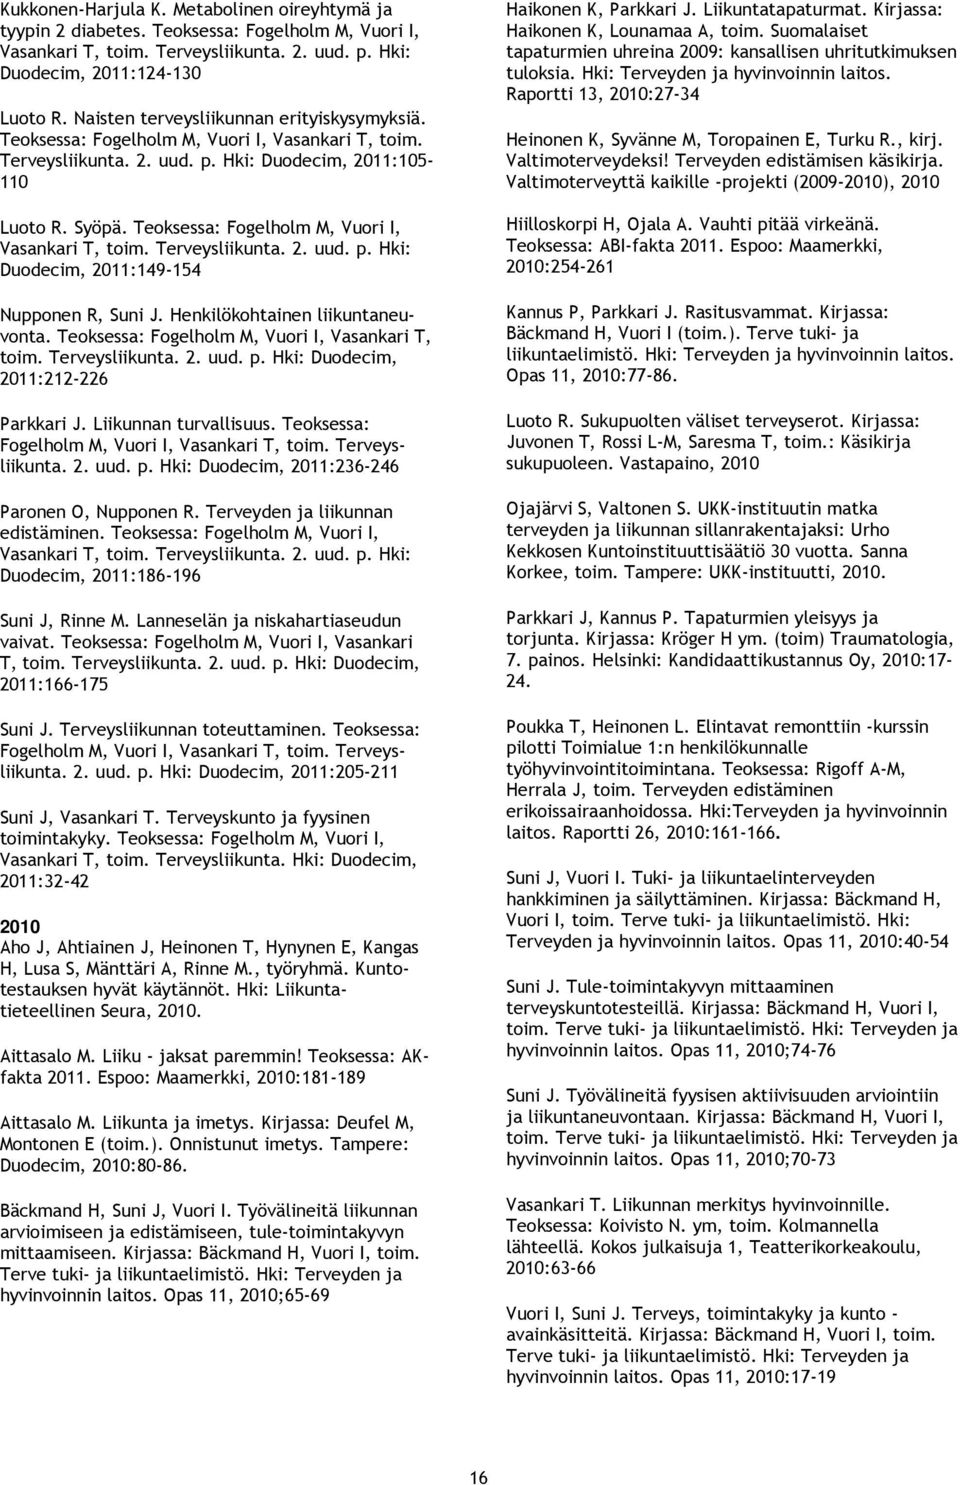 Teoksessa: Fogelholm M, Vuori I, Vasankari T, toim. Terveysliikunta. 2. uud. p. Hki: Duodecim, 2011:149-154 Nupponen R, Suni J. Henkilökohtainen liikuntaneuvonta.